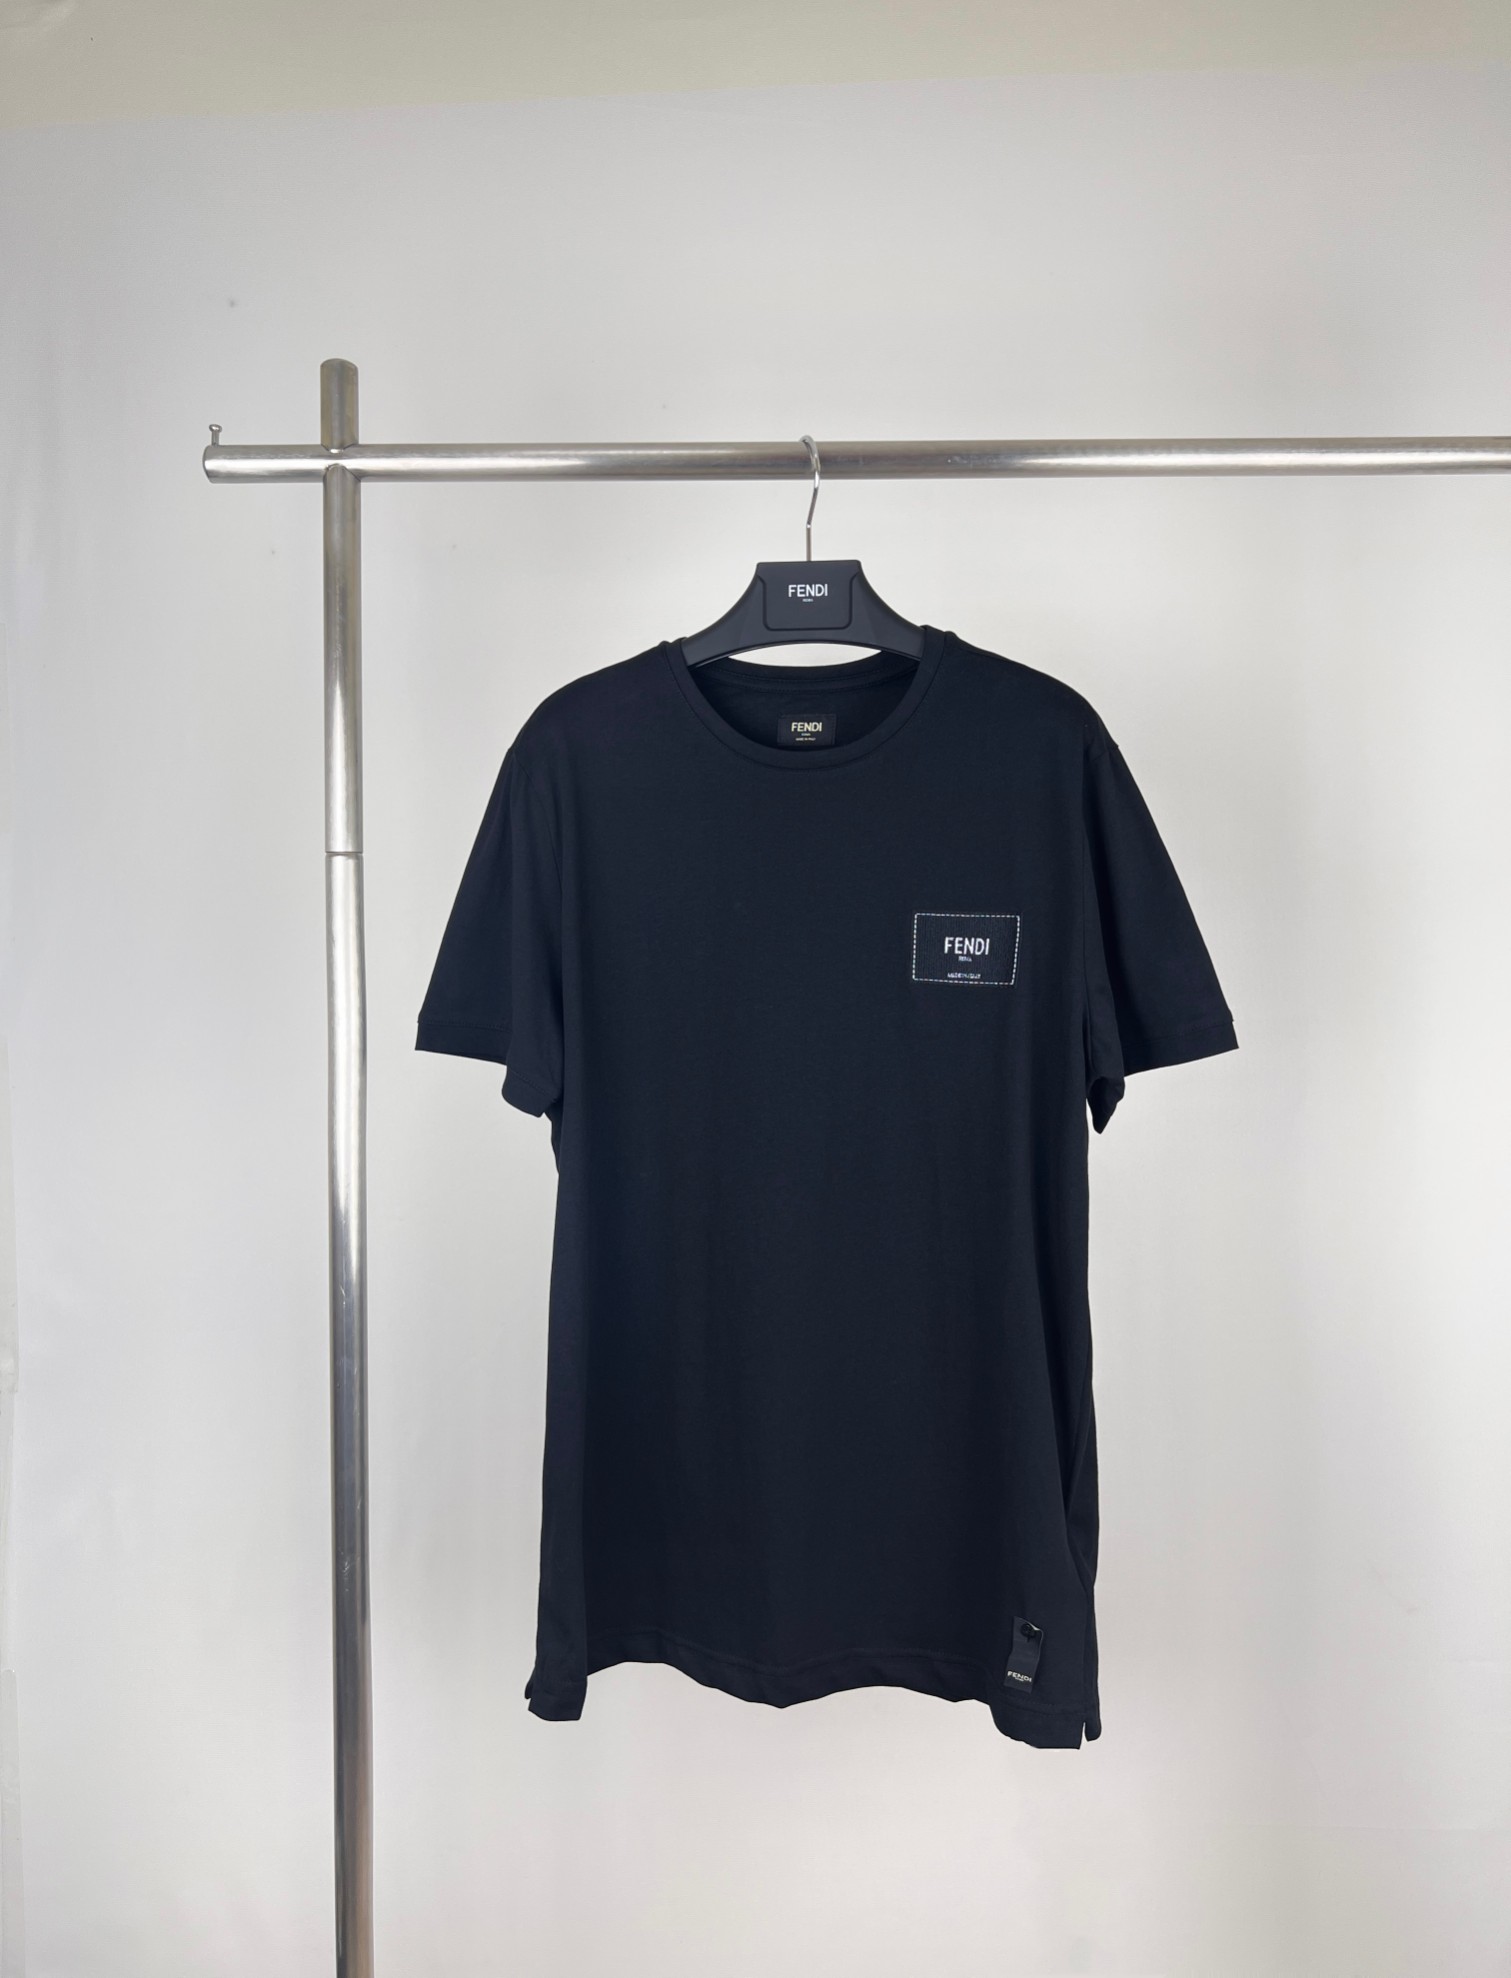 Fendi Clothing T-Shirt Embroidery Short Sleeve